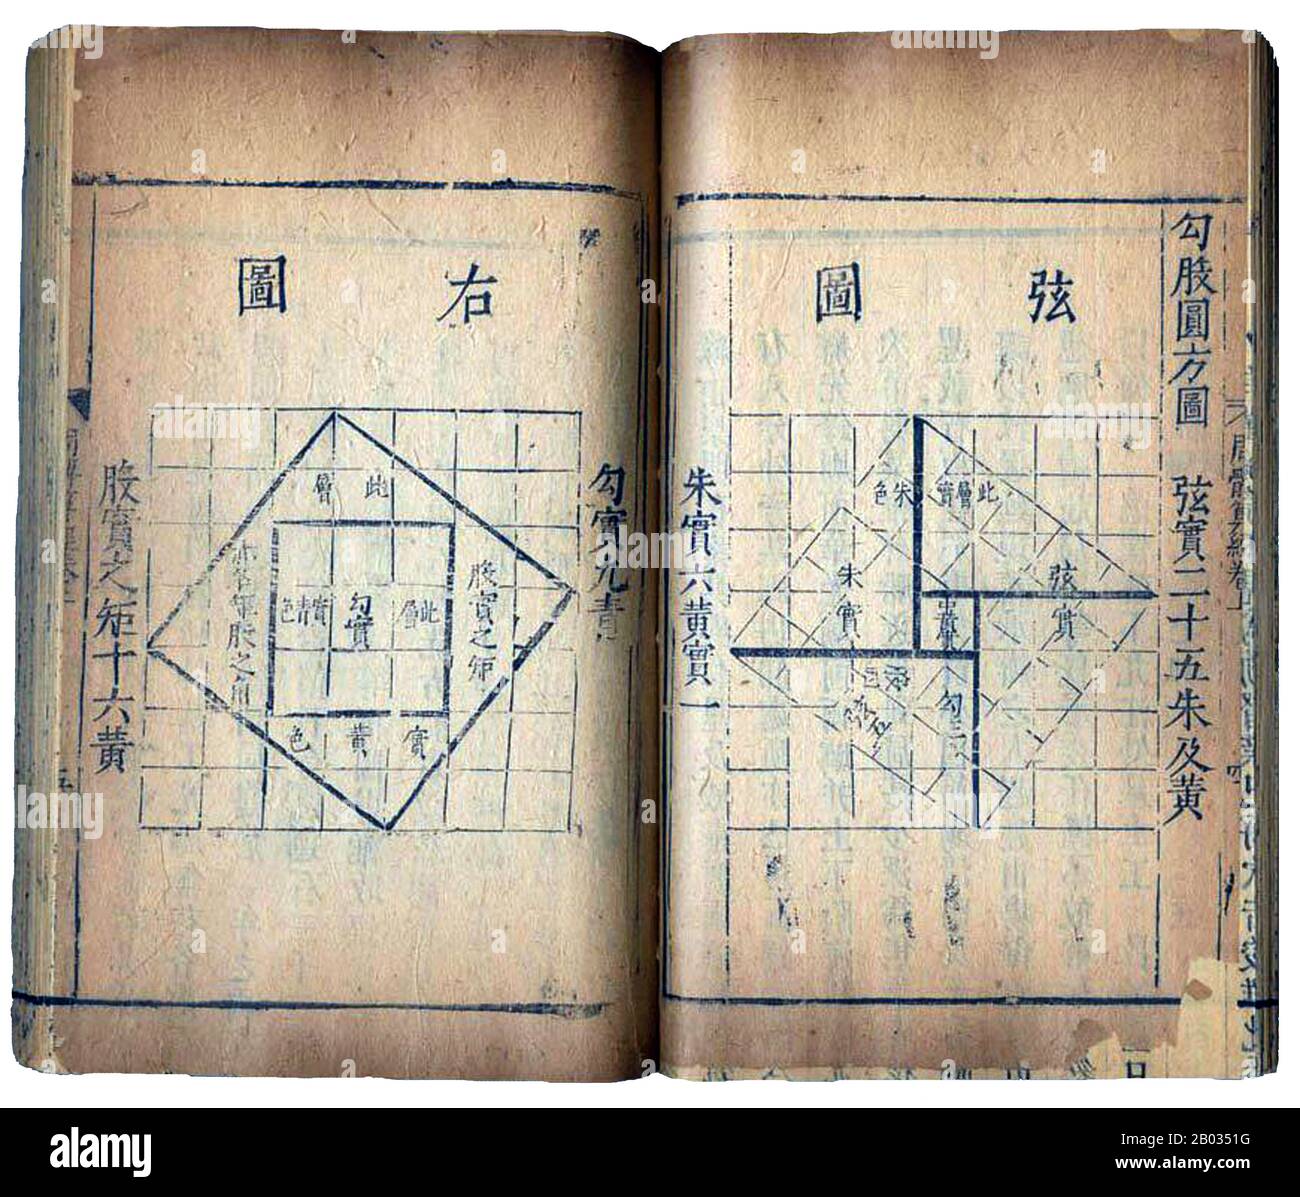 Le Zhou Bi Suan Jing, ou Chou Pei Suan Ching, est l'un des plus anciens textes mathématiques chinois. 'Zhou' désigne l'ancienne dynastie Zhou (c. 1046 - 256 BCE) 'Bi' désigne le gnon d'un cadran solaire. L'étude est une collection anonyme de 246 problèmes rencontrés par le duc de Zhou et son astronome et mathématicien, Shang Gao. Chaque question a indiqué sa réponse numérique et l'algorithme arithmétique correspondant. Le suanjing de Zhoubi contient l'une des premières preuves enregistrées du théorème de Pythagore. Banque D'Images